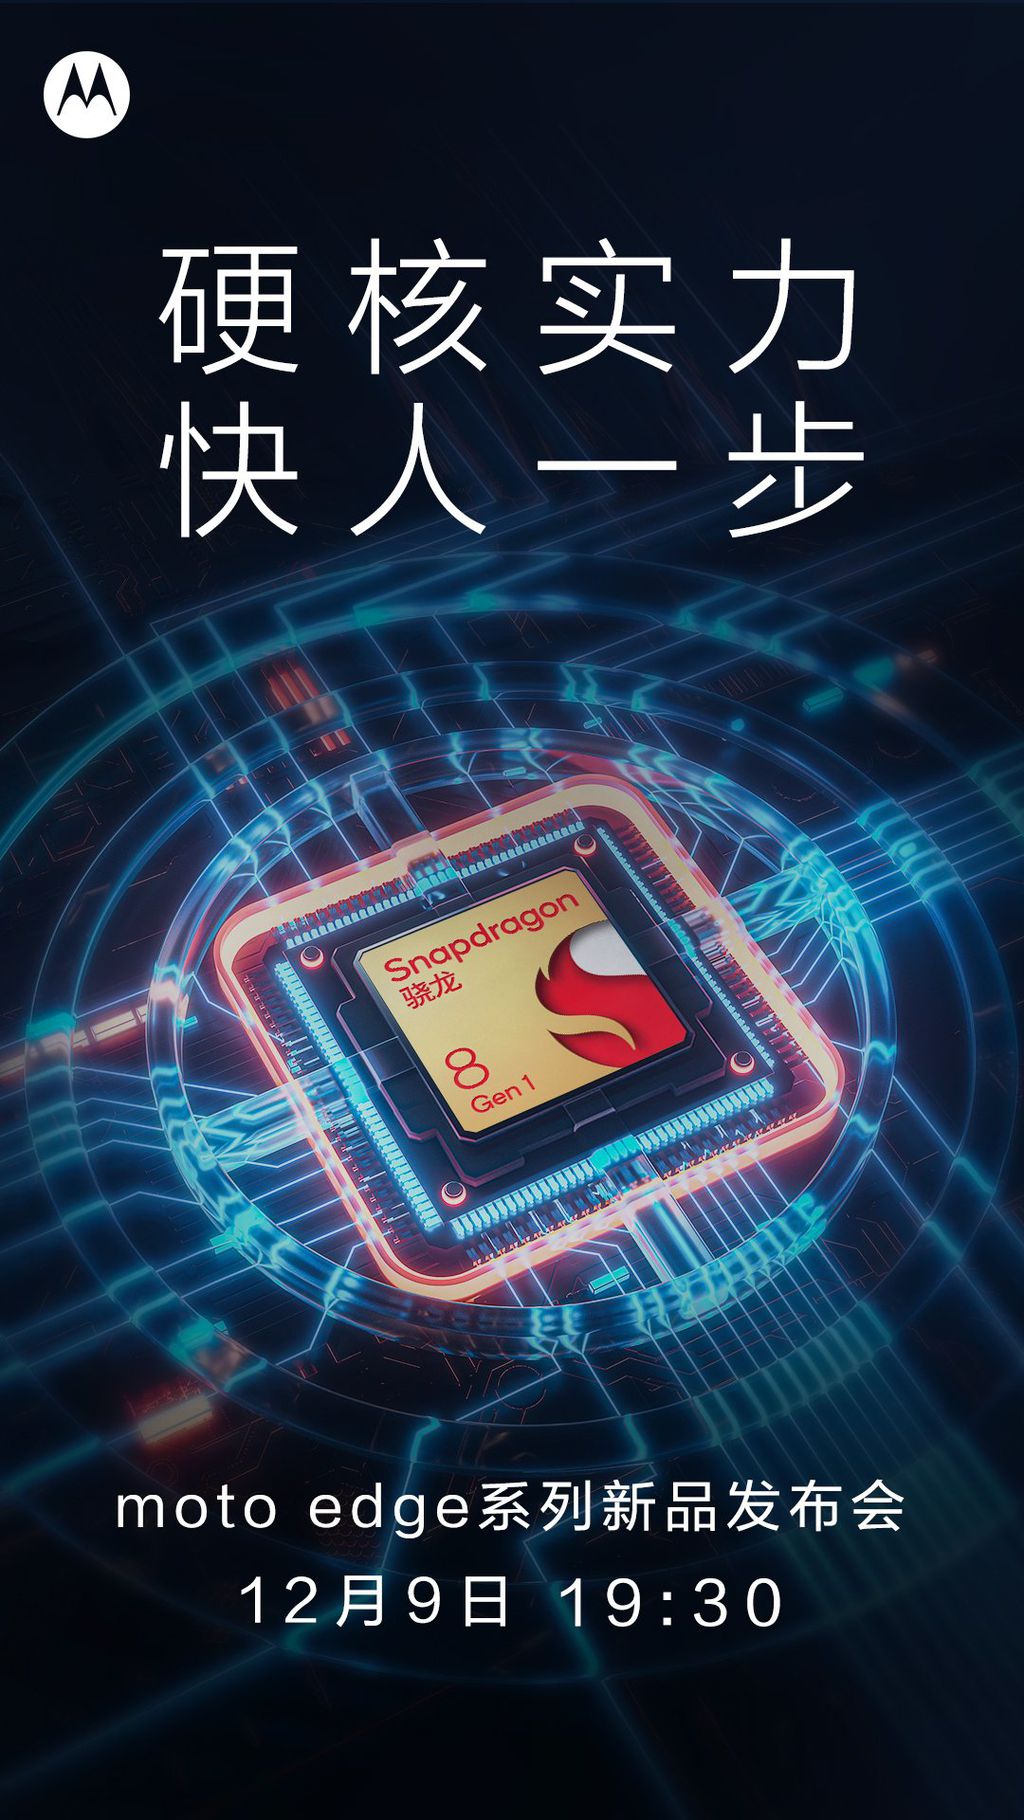 Poster divulgado pela Motorola confirma data de lançamento de modelo Edge com Snapdragon 8 Gen 1 (Imagem: Reprodução/Motorola)